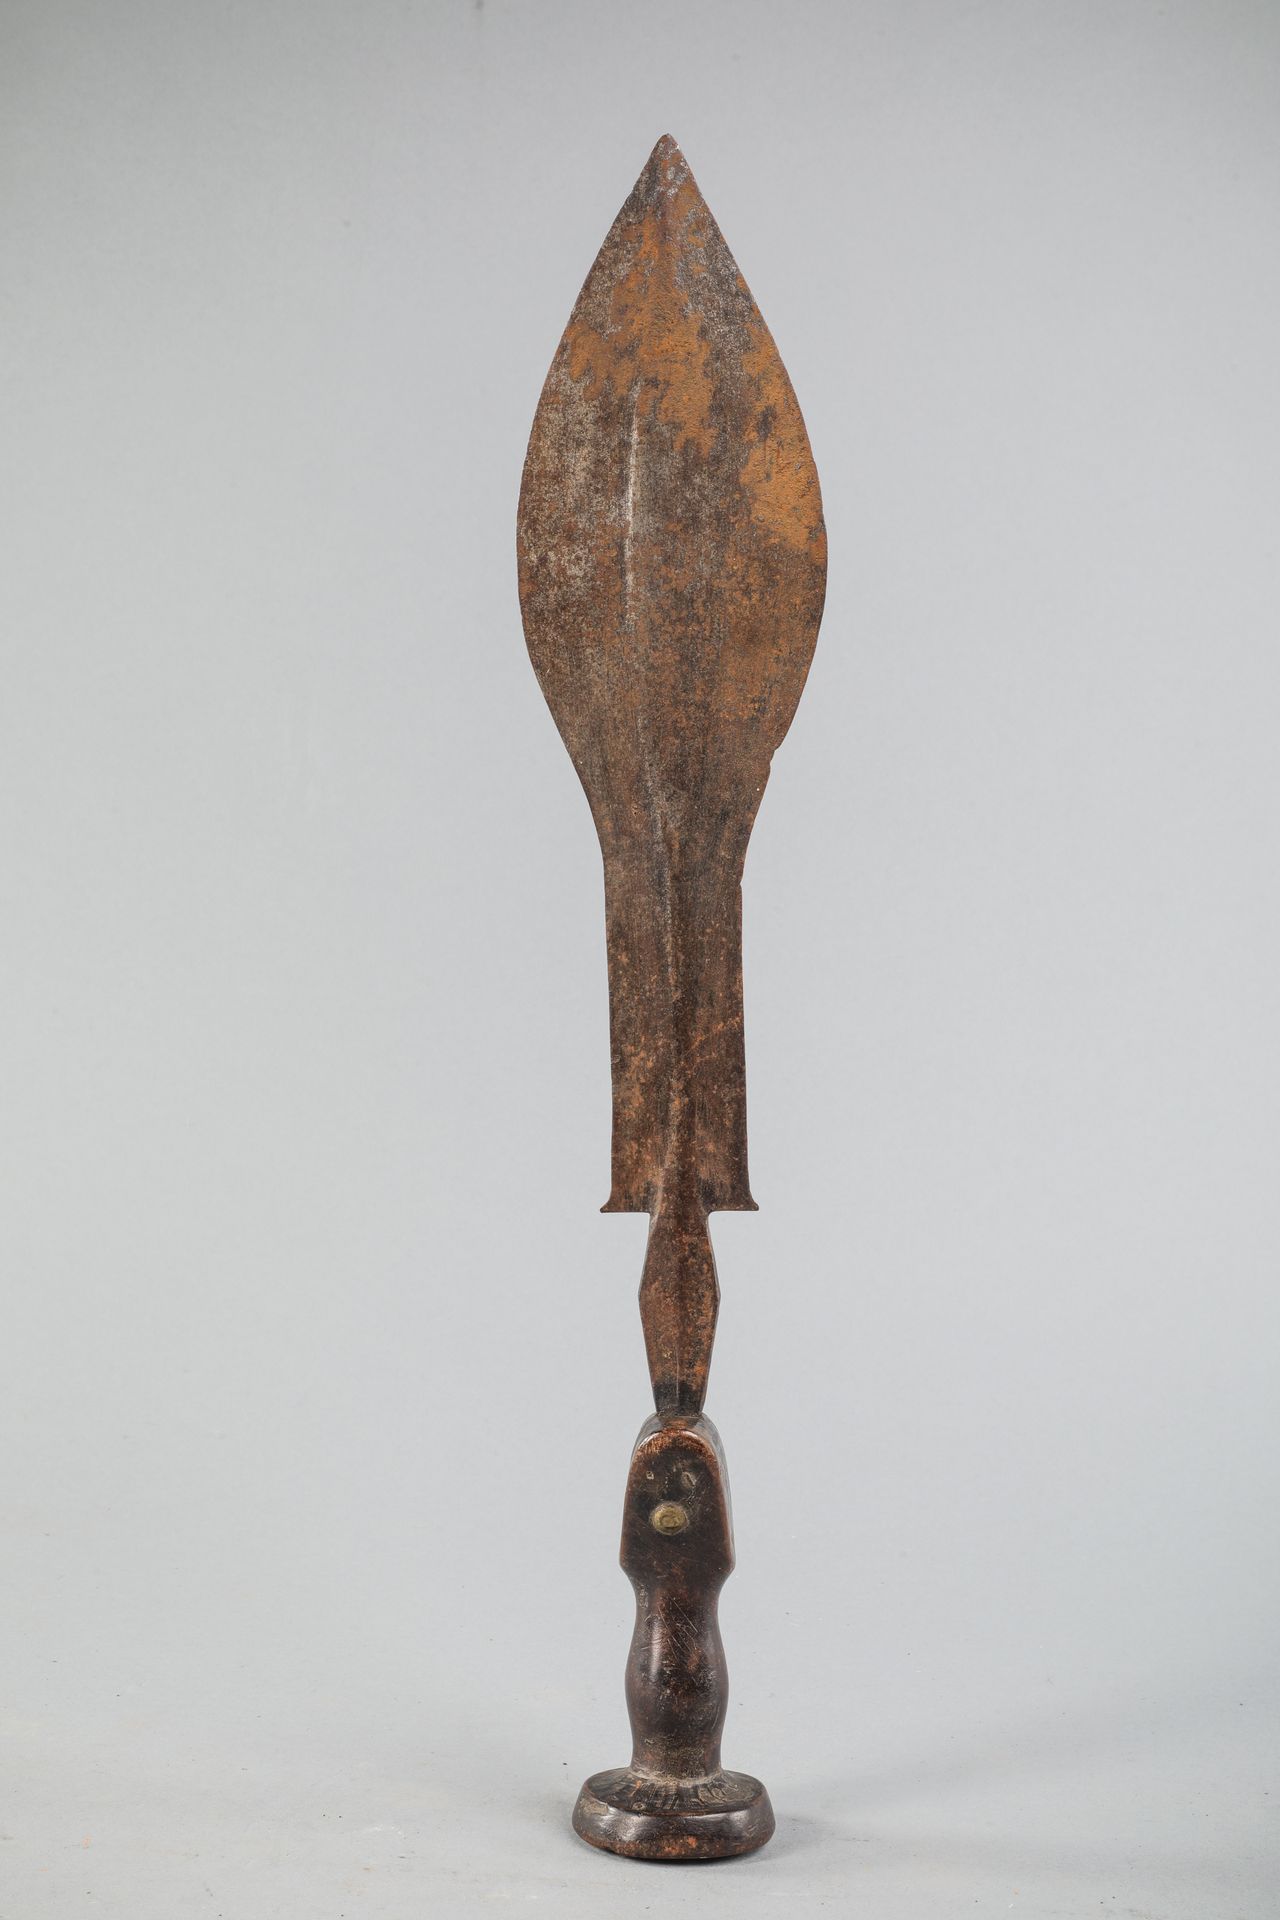 Null 刚果剑。刀片的形状是一片叶子。风格化的手柄。木头，锻铁，装饰钉，古老的光泽。长52厘米。